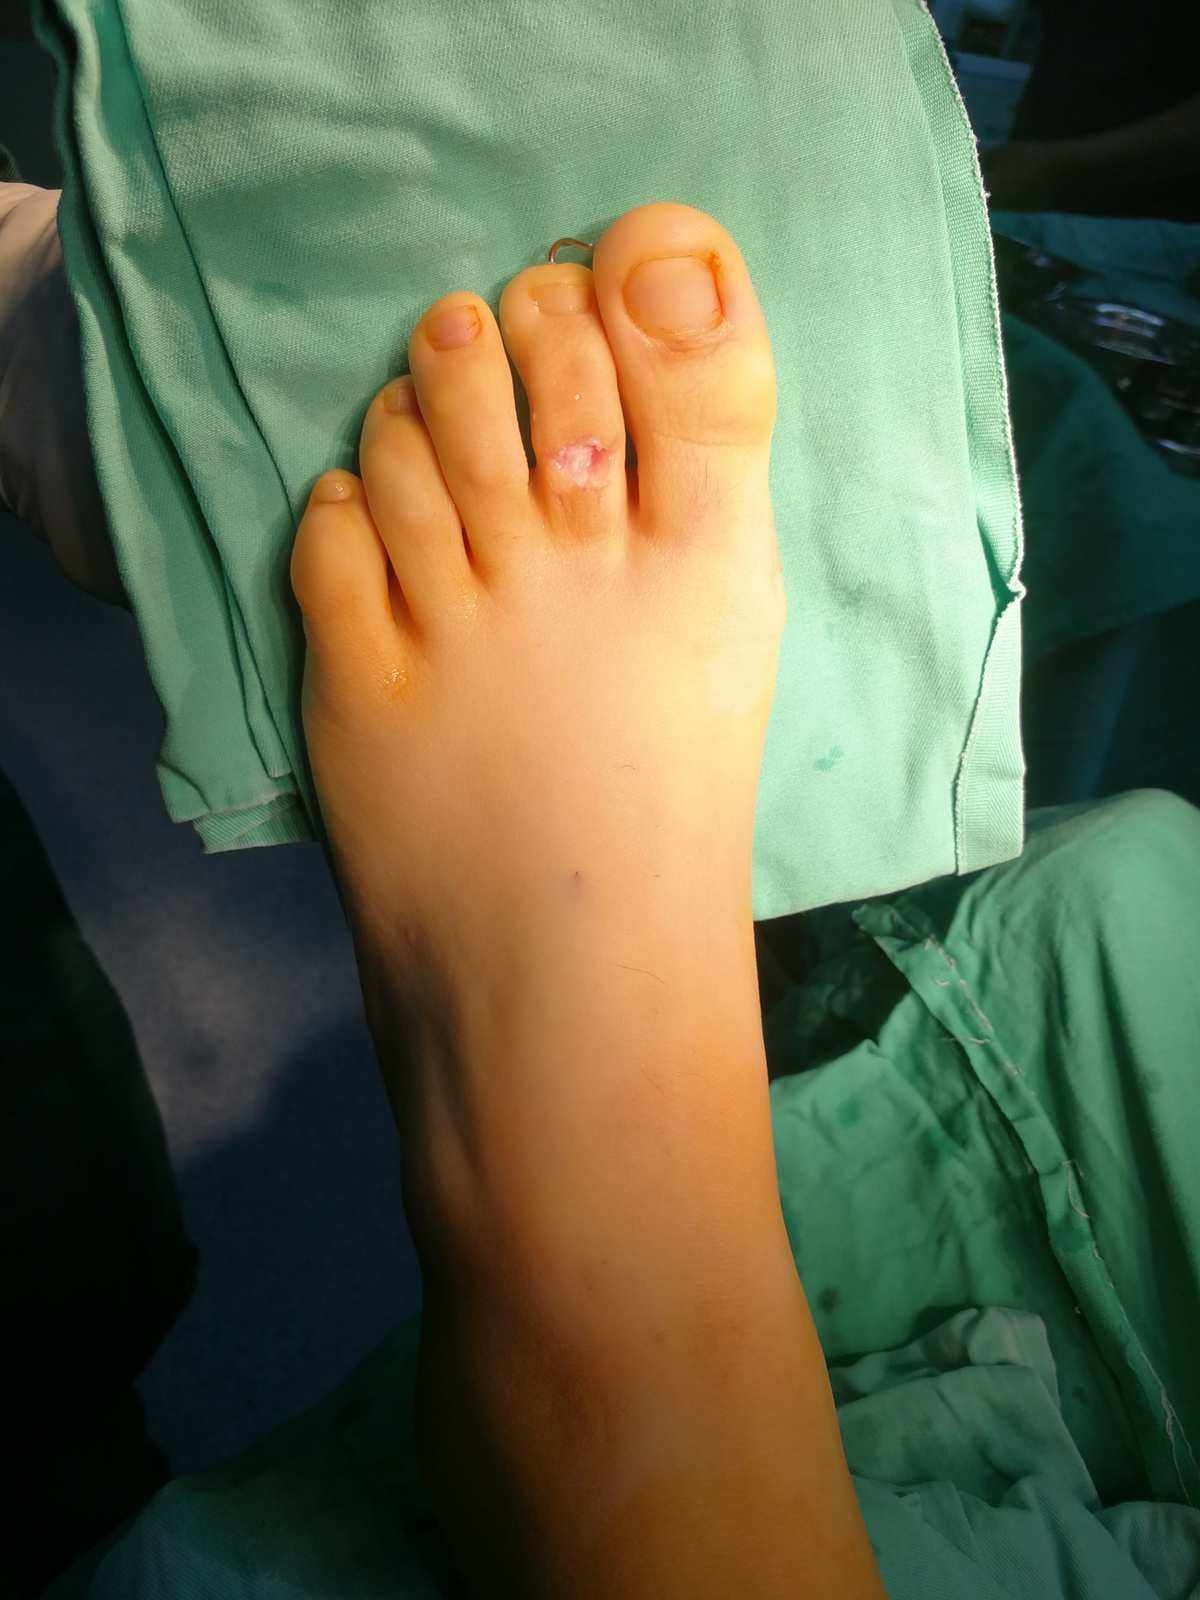 大脚趾关节疼痛的 5 个常见原因 - 知乎